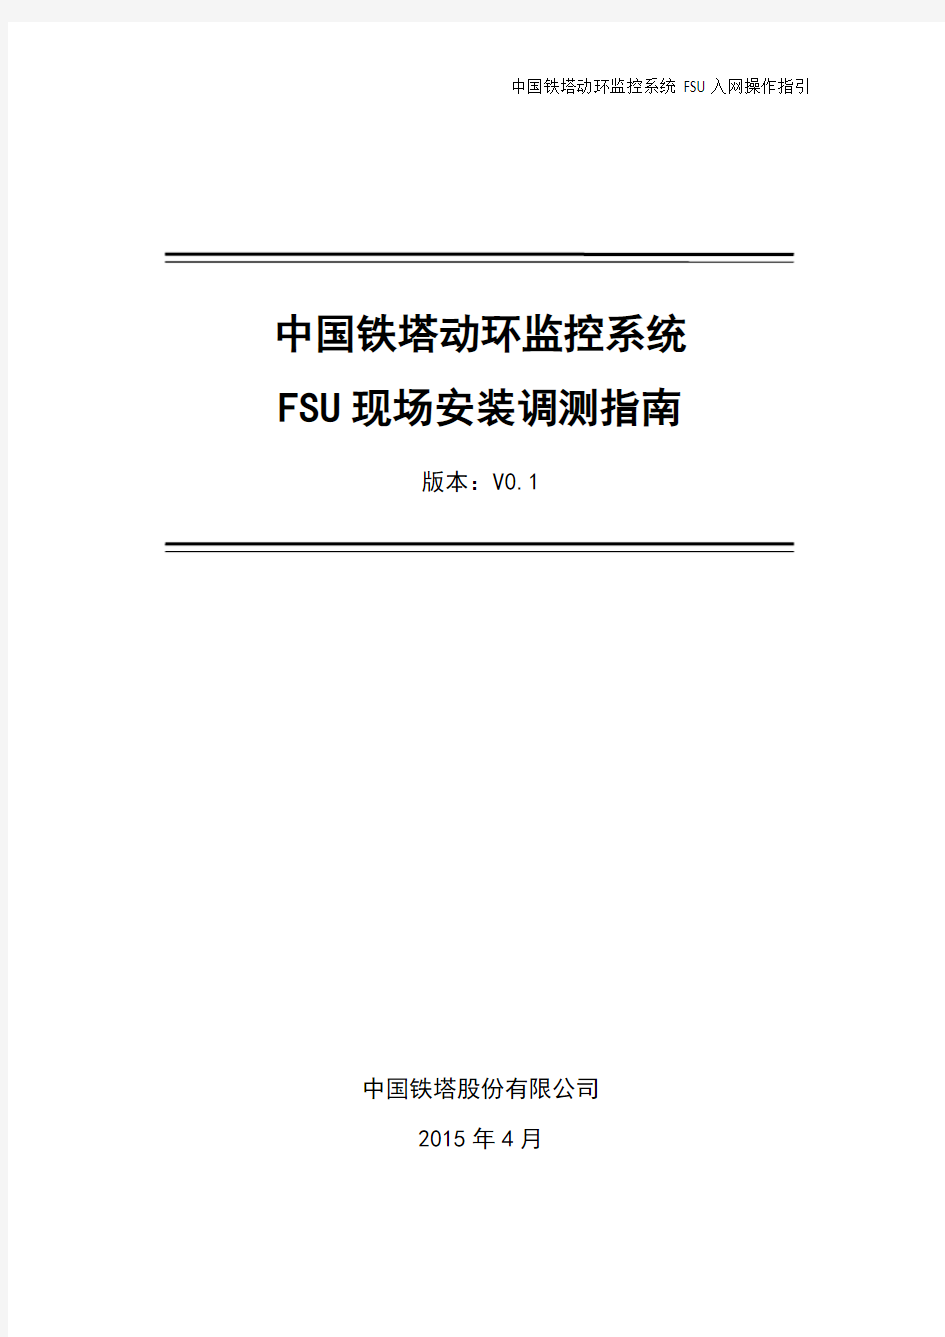 (完整版)中国铁塔动环监控系统FSU现场安装调测操作指南_20150507